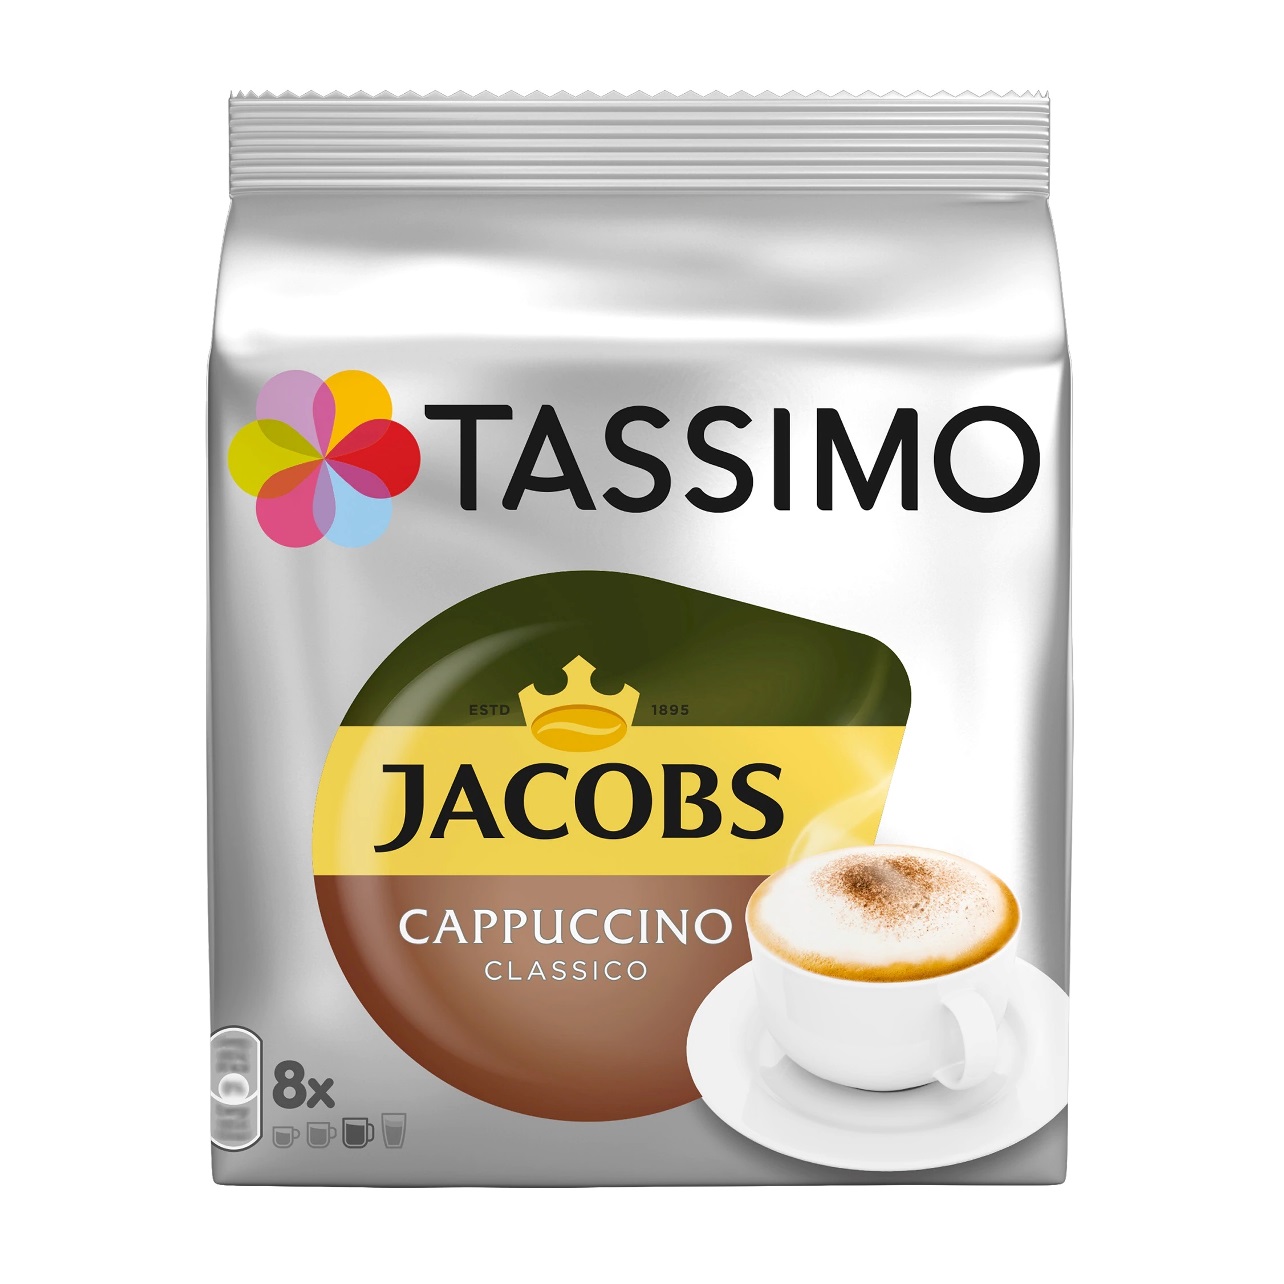 Capsule Cafea Jacobs Tassimo Latte Macchiato